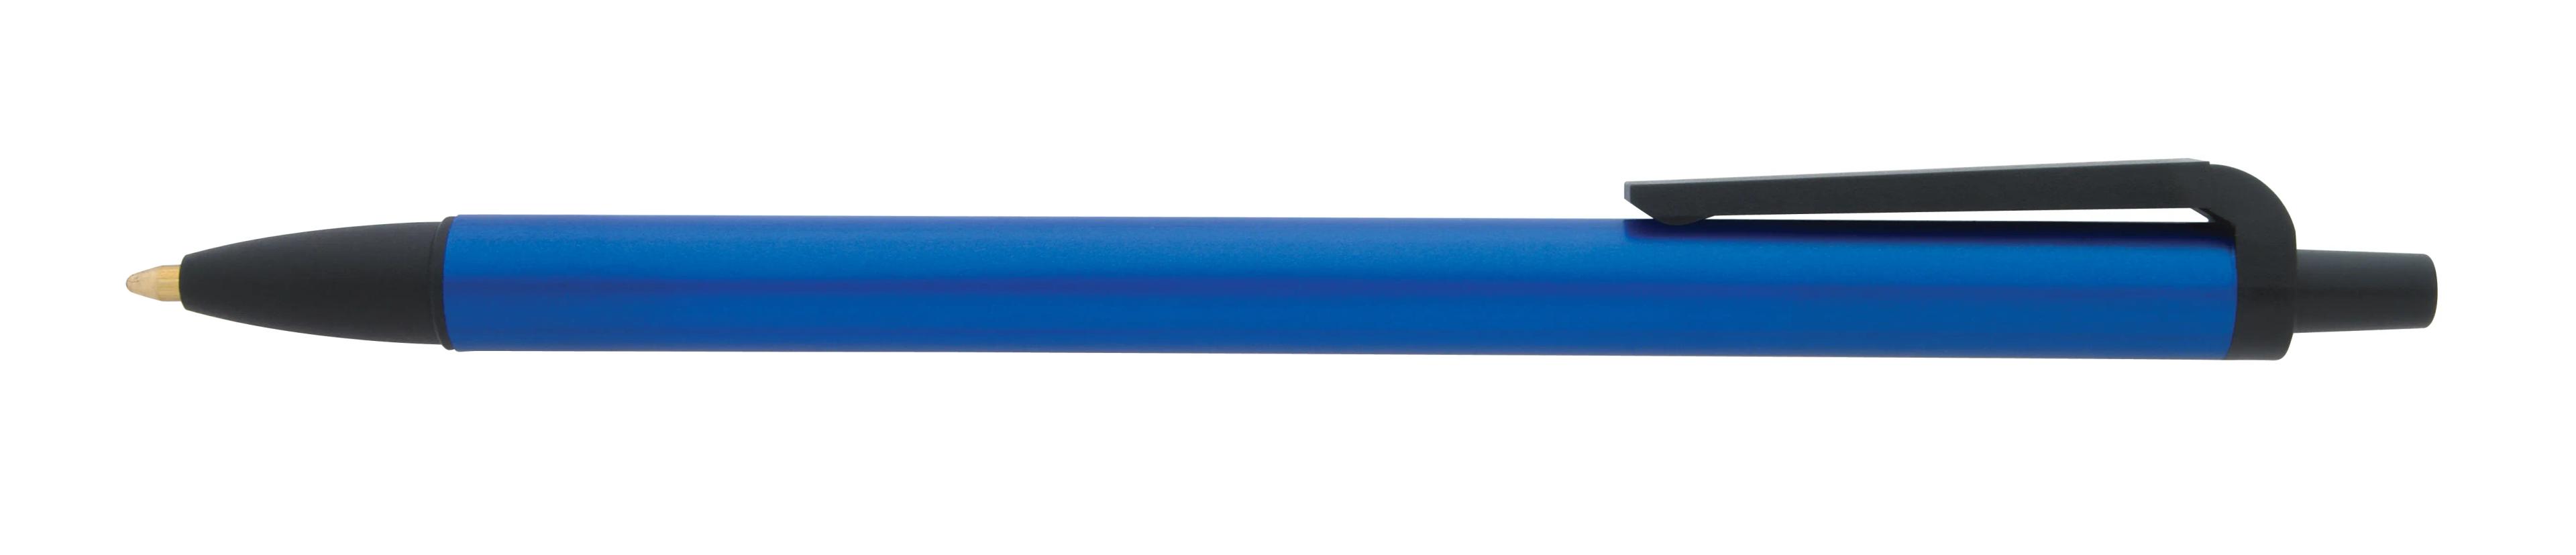 Metallic Contender Pen 1 of 12